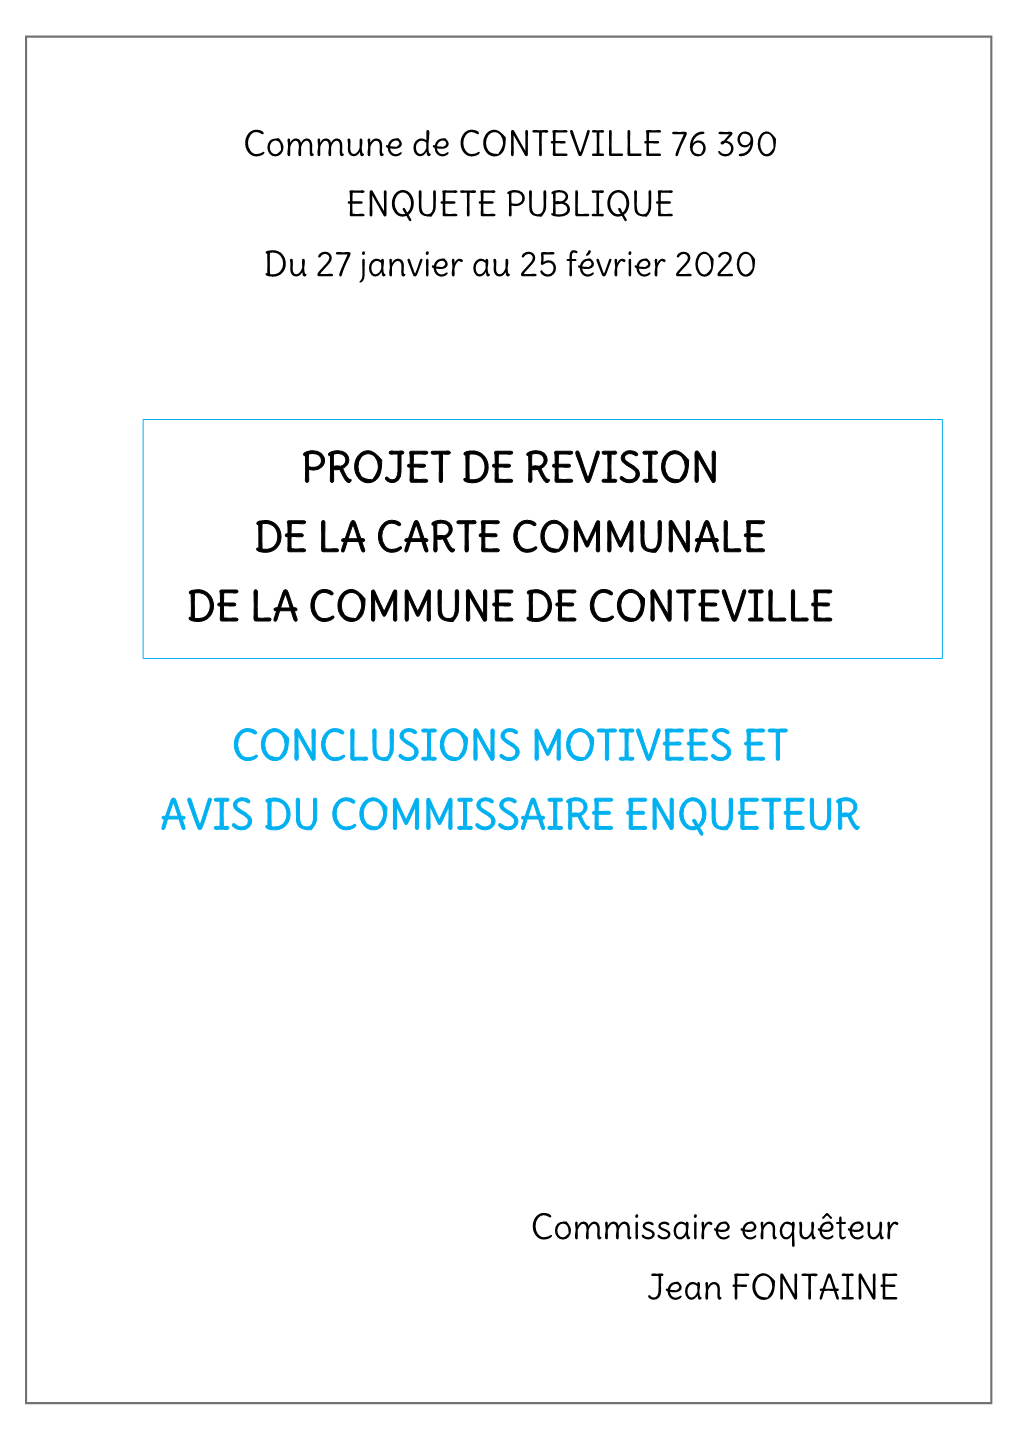 Projet De Revision De La Carte Communale De La Commune De Conteville